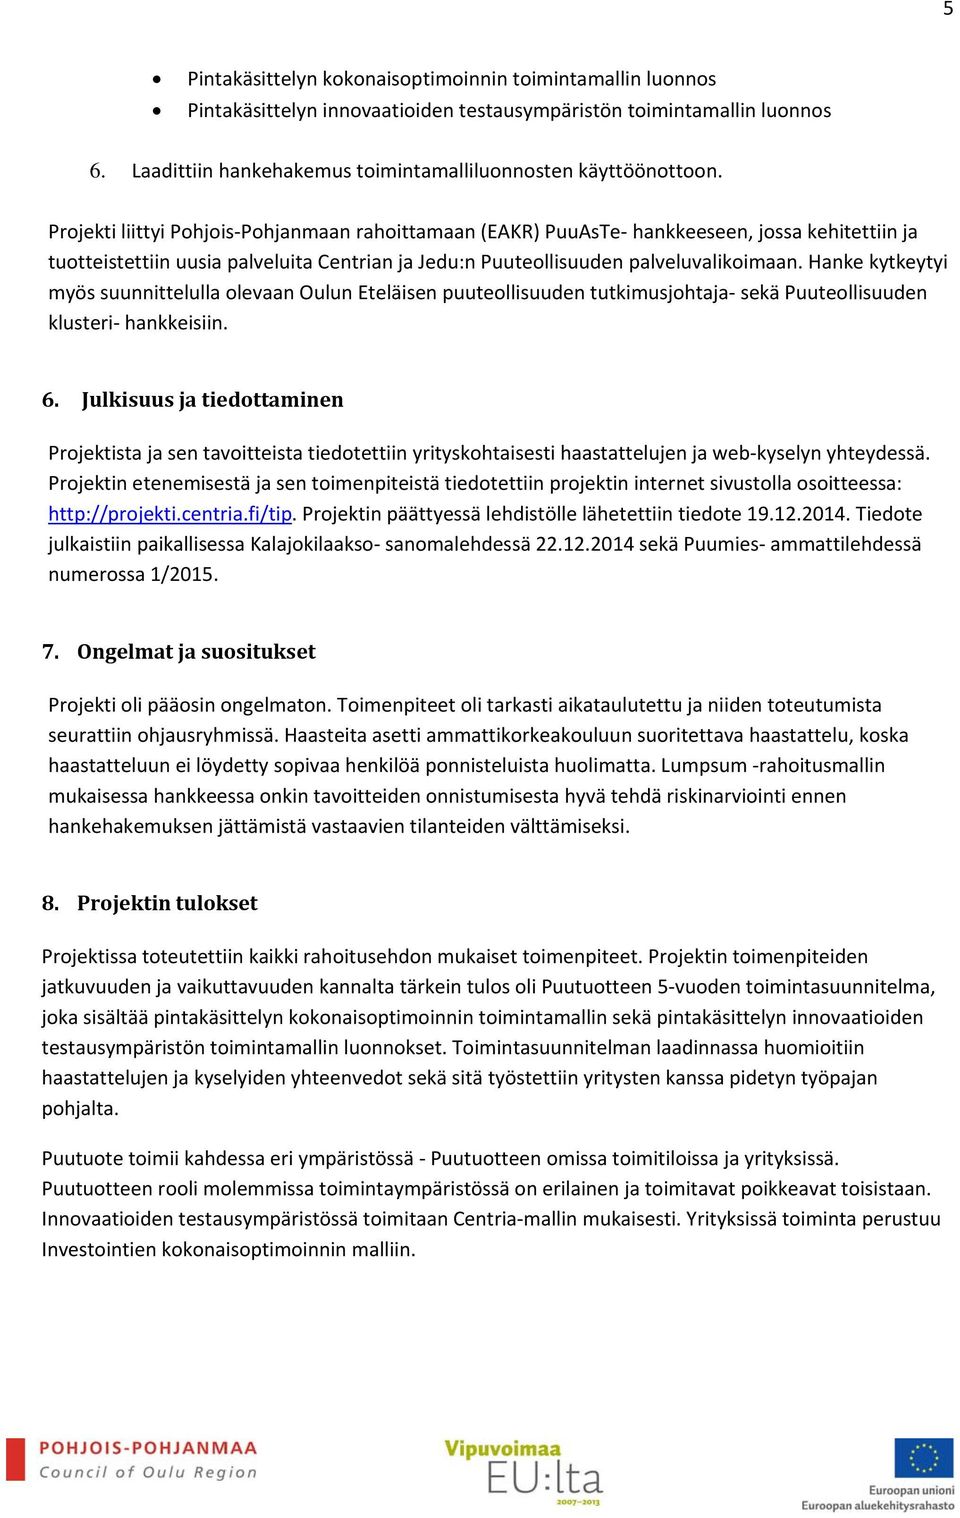 Hanke kytkeytyi myös suunnittelulla olevaan Oulun Eteläisen puuteollisuuden tutkimusjohtaja sekä Puuteollisuuden klusteri hankkeisiin. 6.